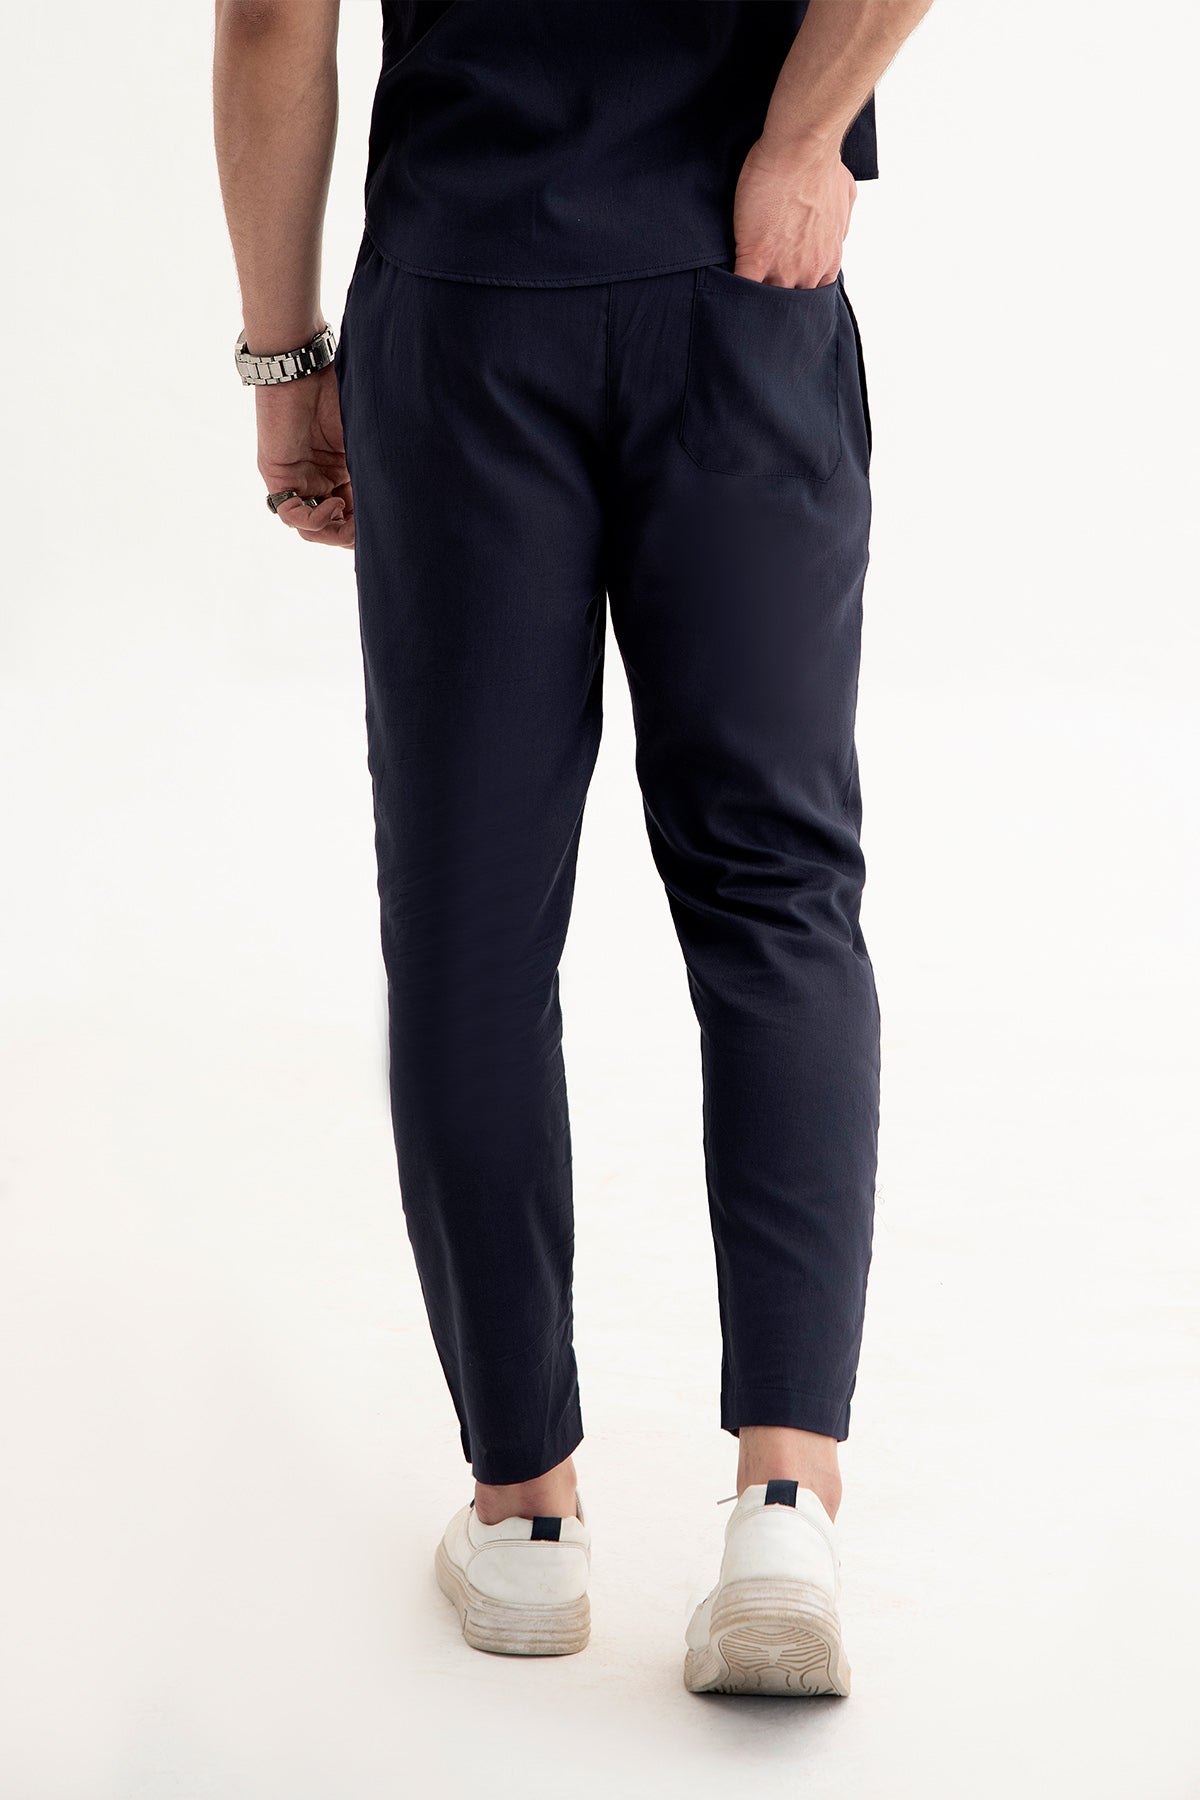 Navy Blue Irish Linen trouser